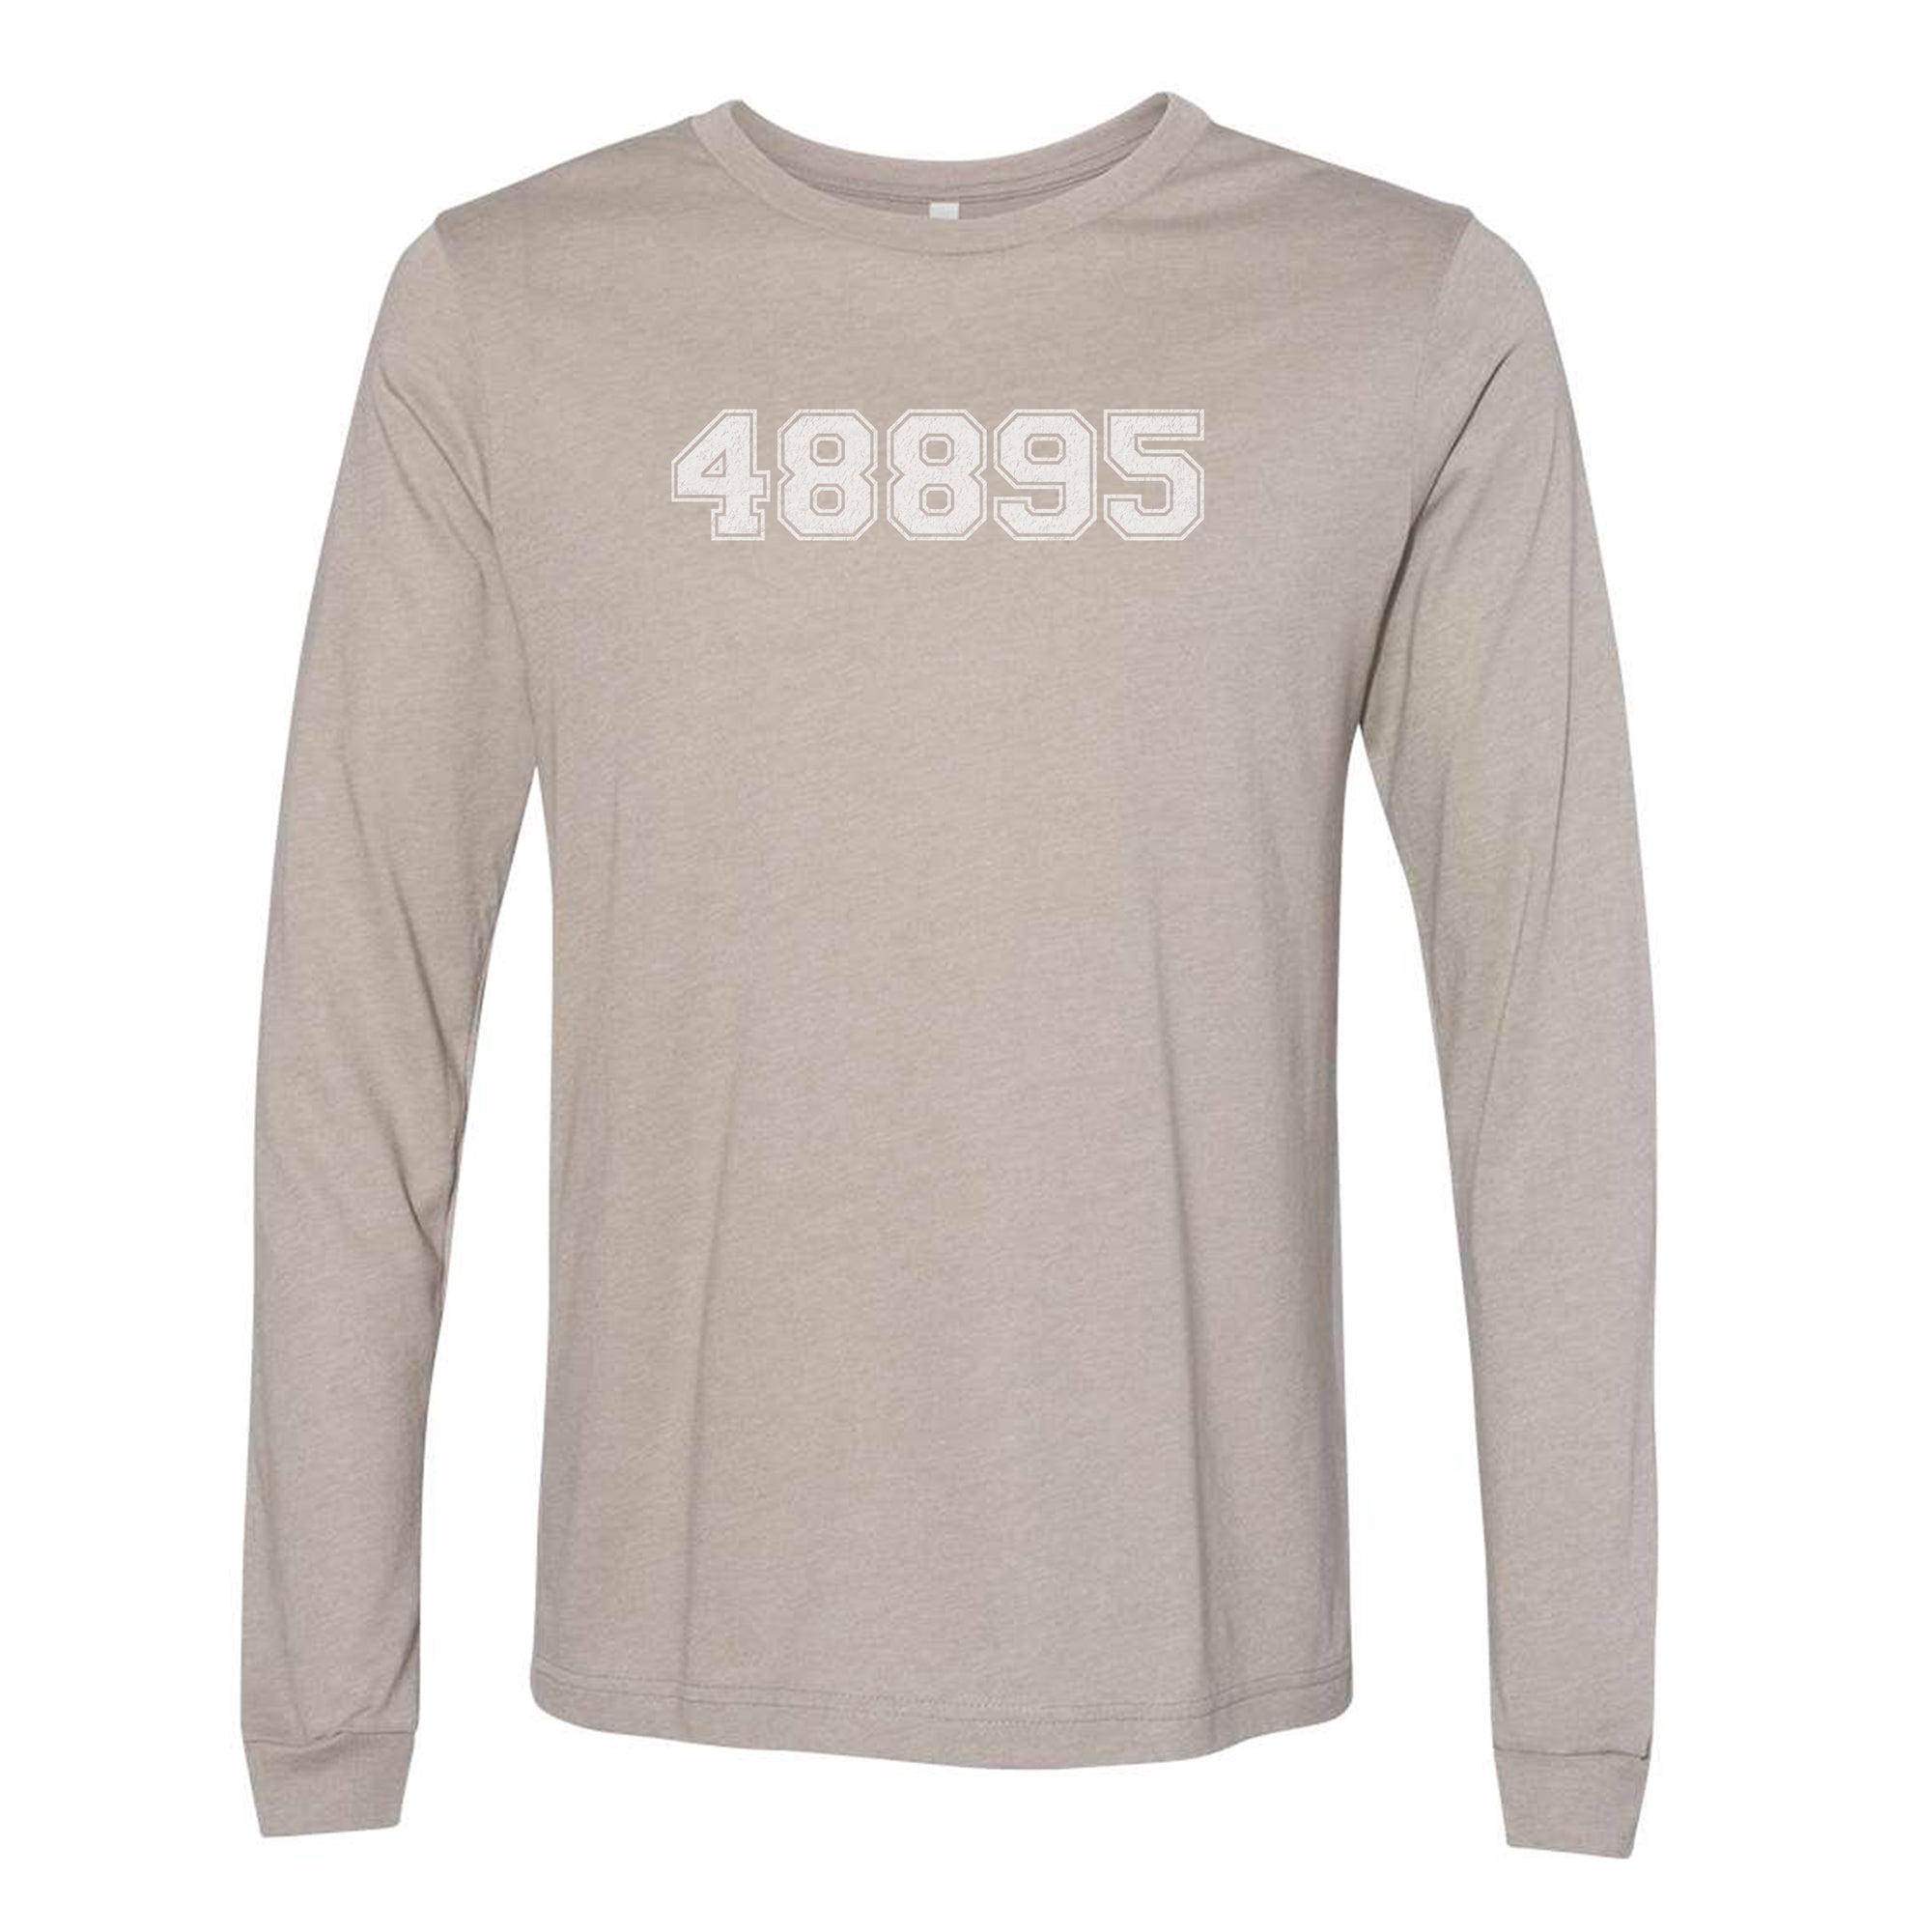 "48895" - Vintage - Blended Adult Long Sleeve